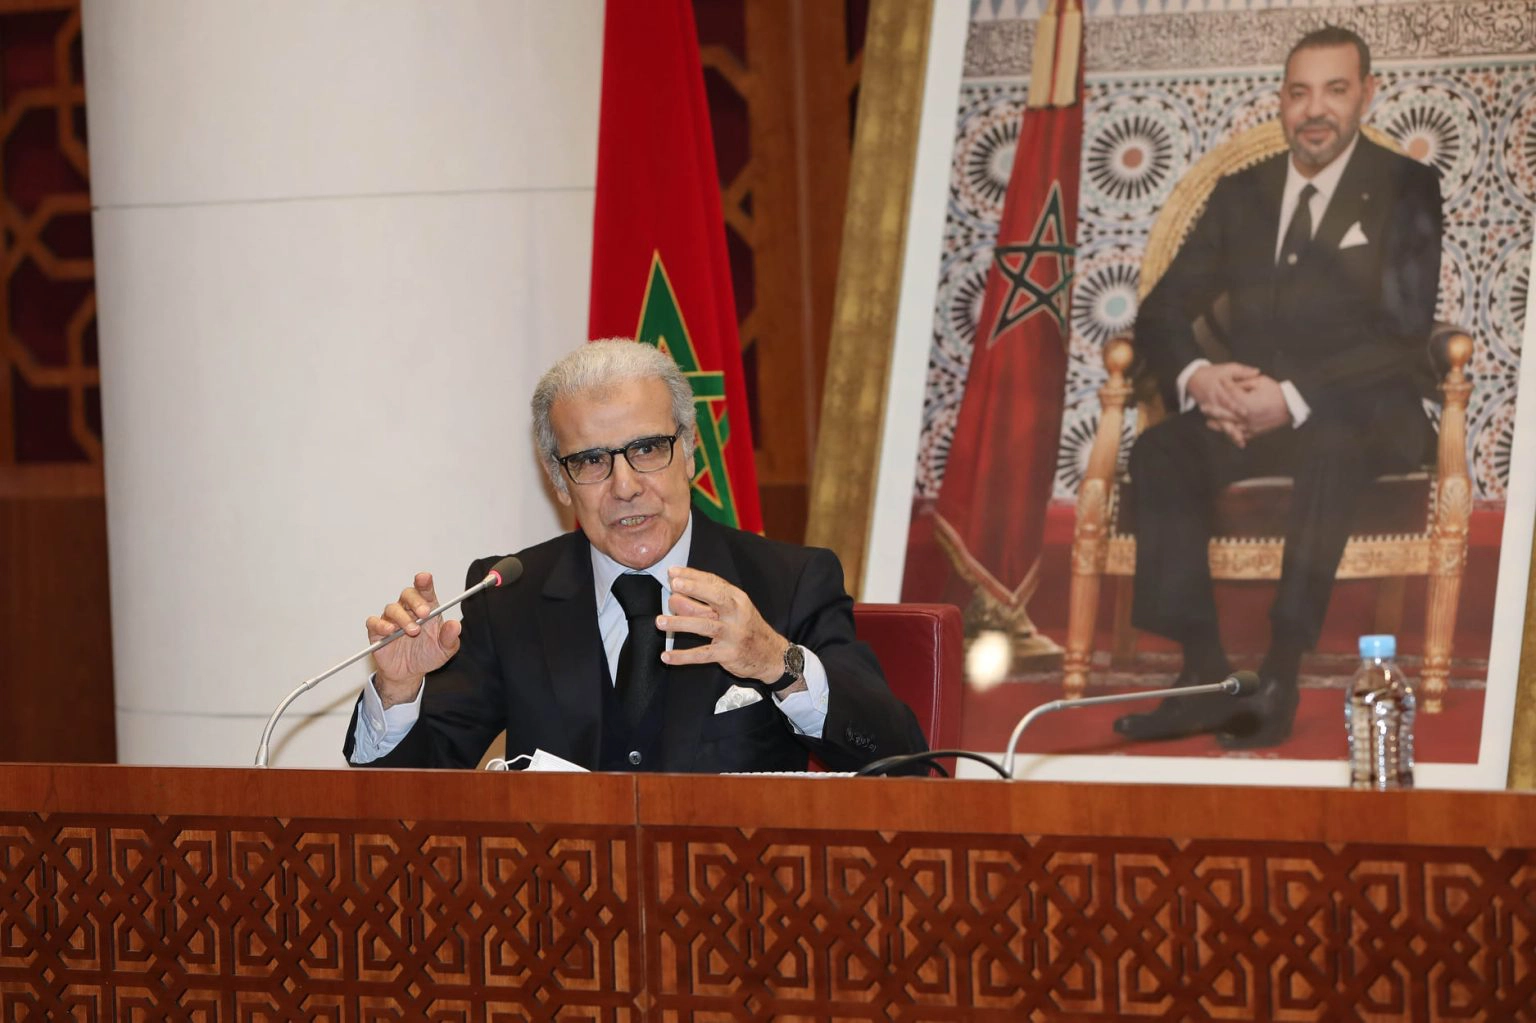 خبير: قرار بنك المغرب لن يخفض التضخم لأنه مستورد وعلى الحكومة التحرك لمواكبته